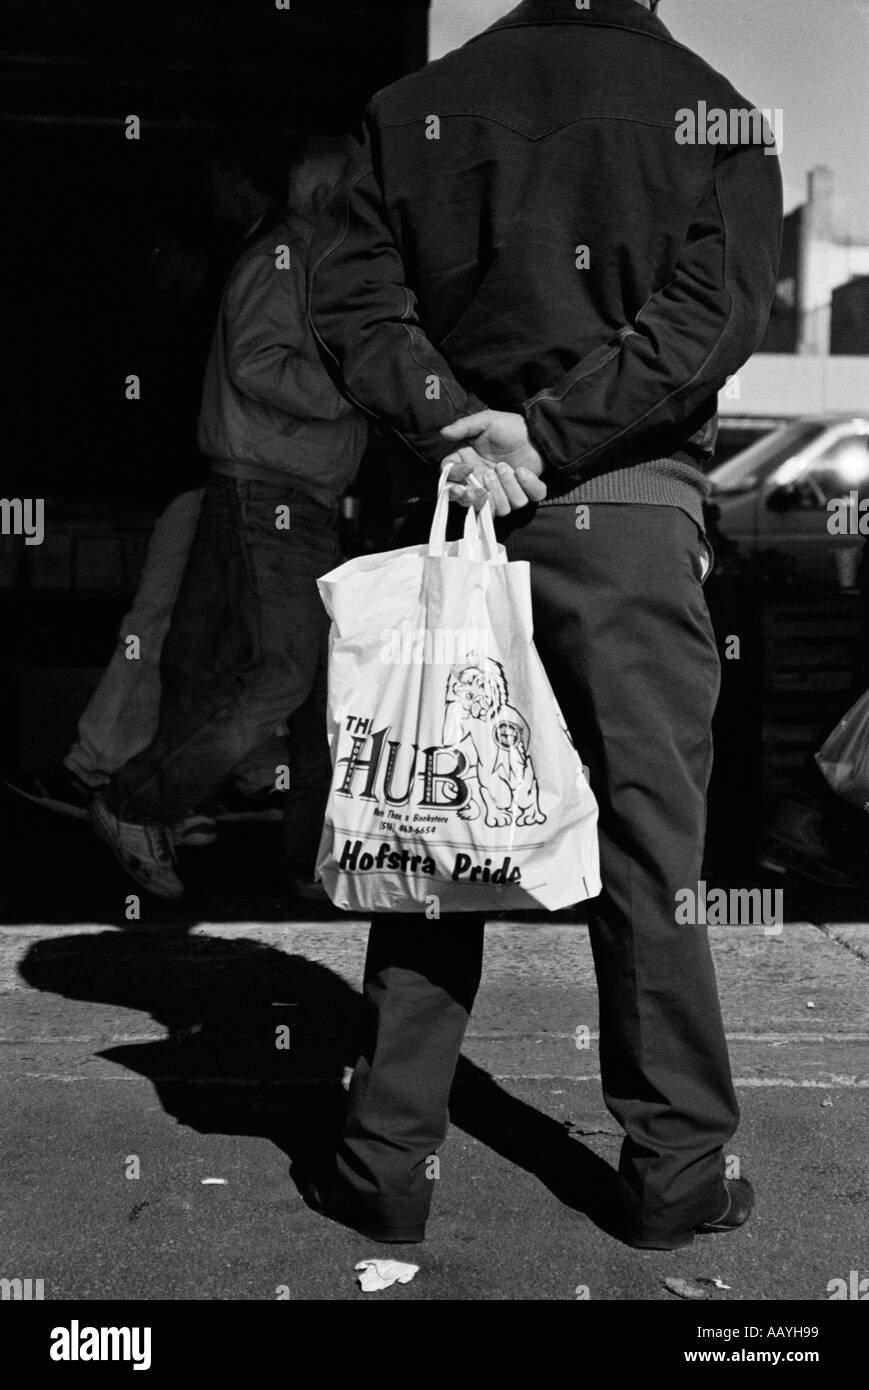 Homme tenant sac blanc portant des vêtements noirs Banque D'Images